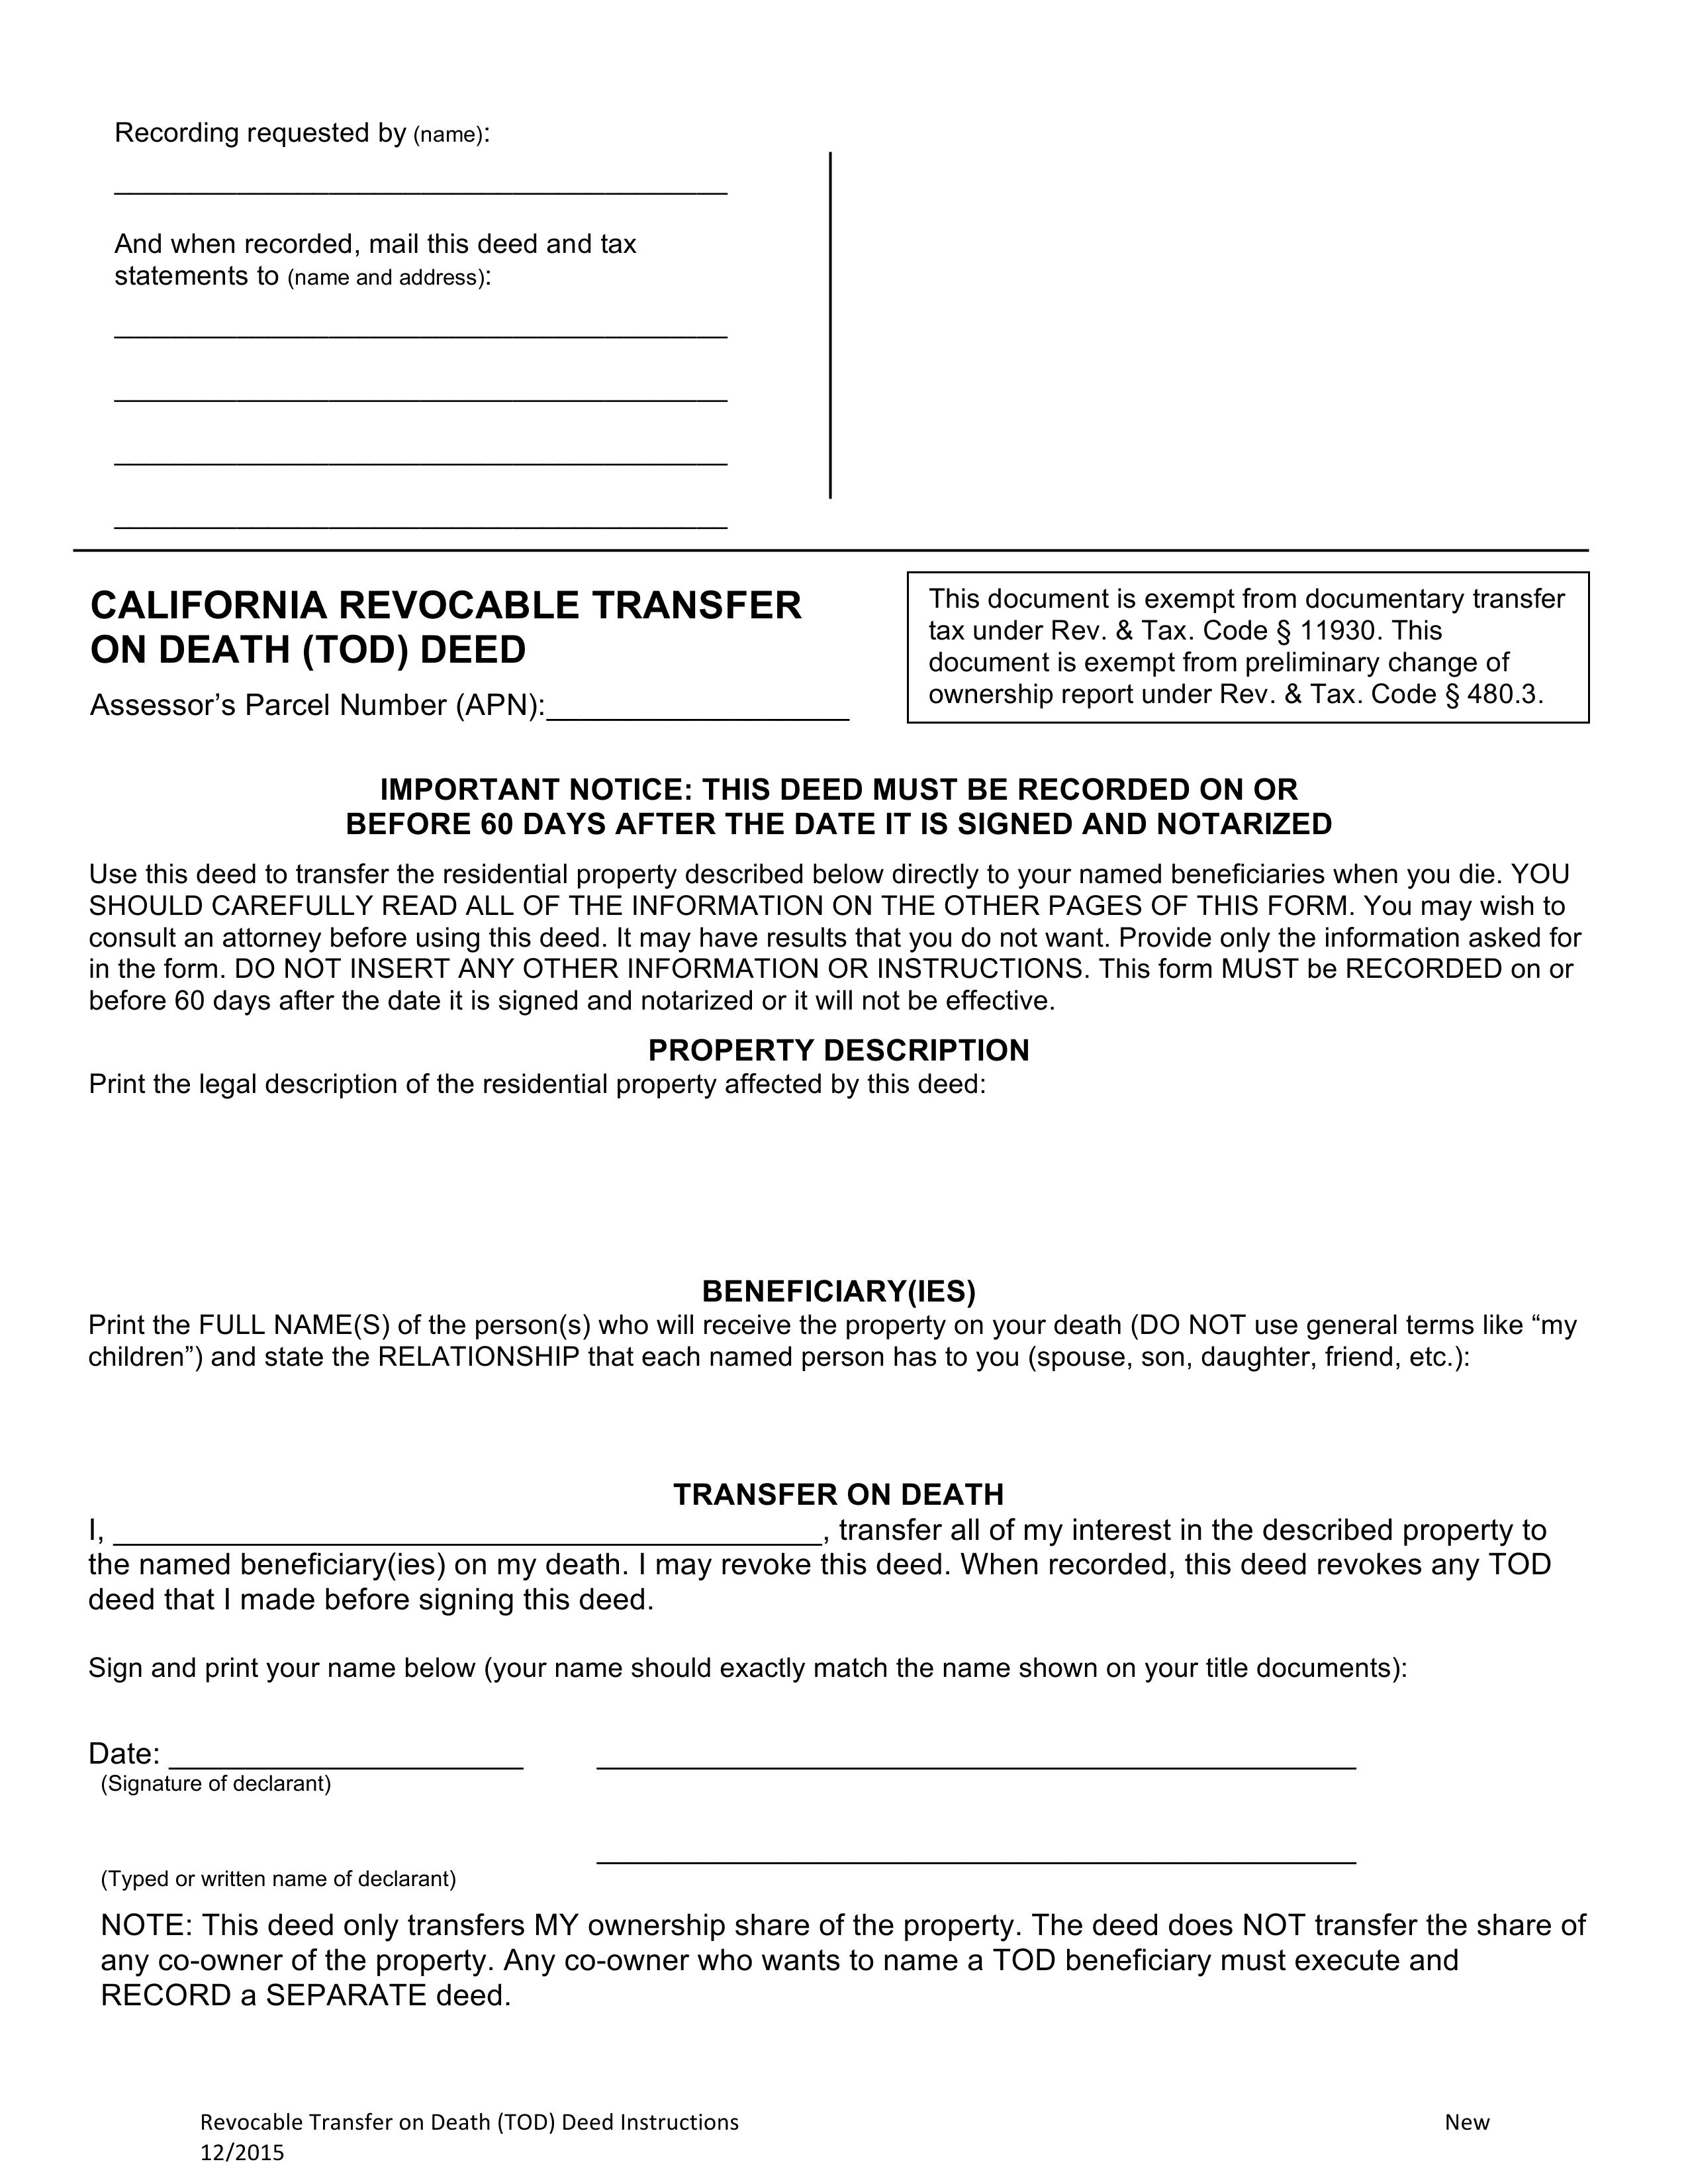 California Transfer on Death Deed Form